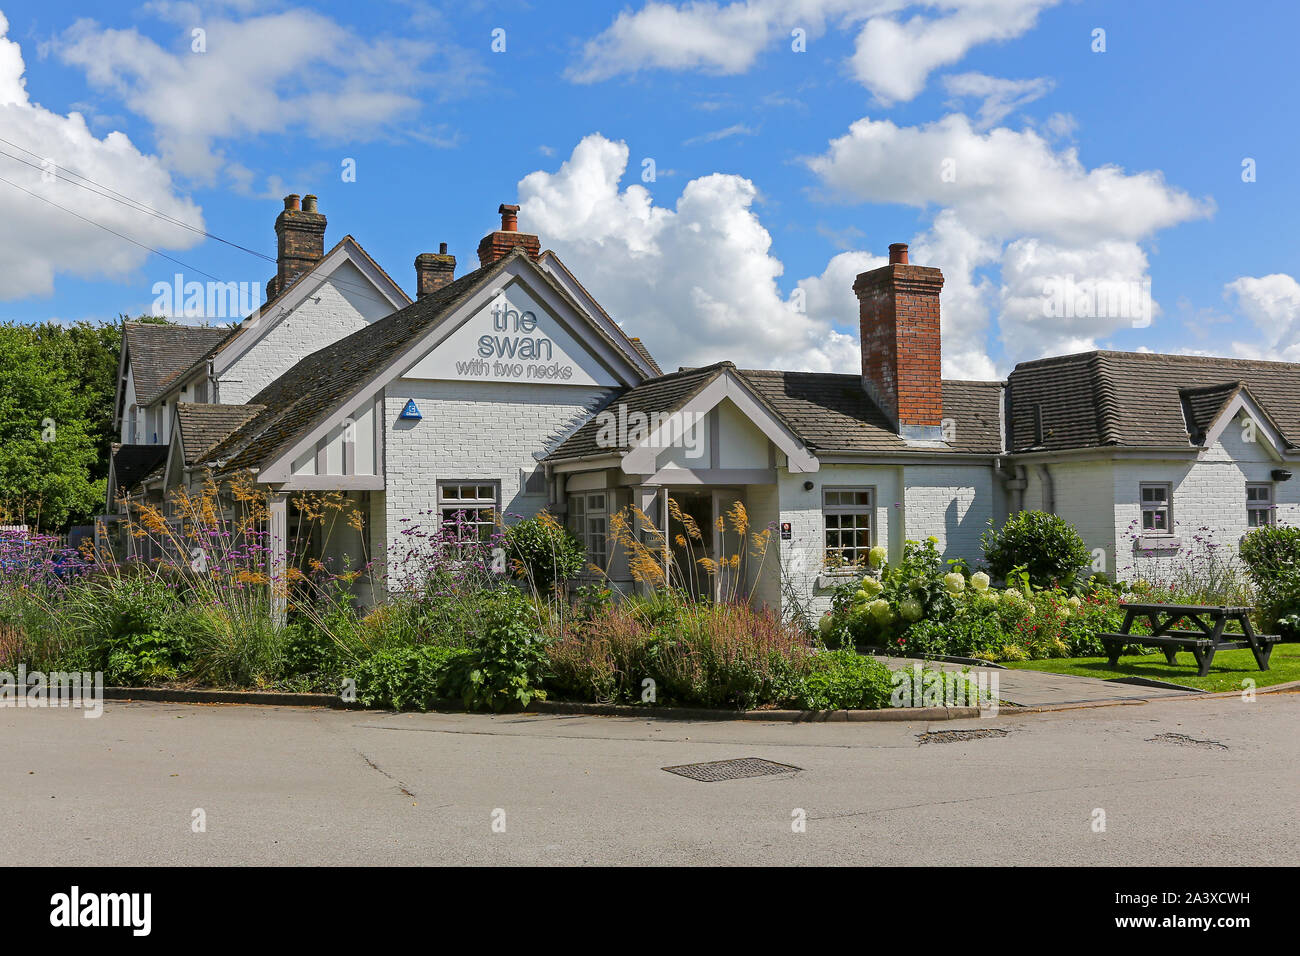 Der Schwan mit zwei Hälsen Pub oder Public House, Blackbrook, Newcastle under Lyme, Staffordshire, England, UK Stockfoto